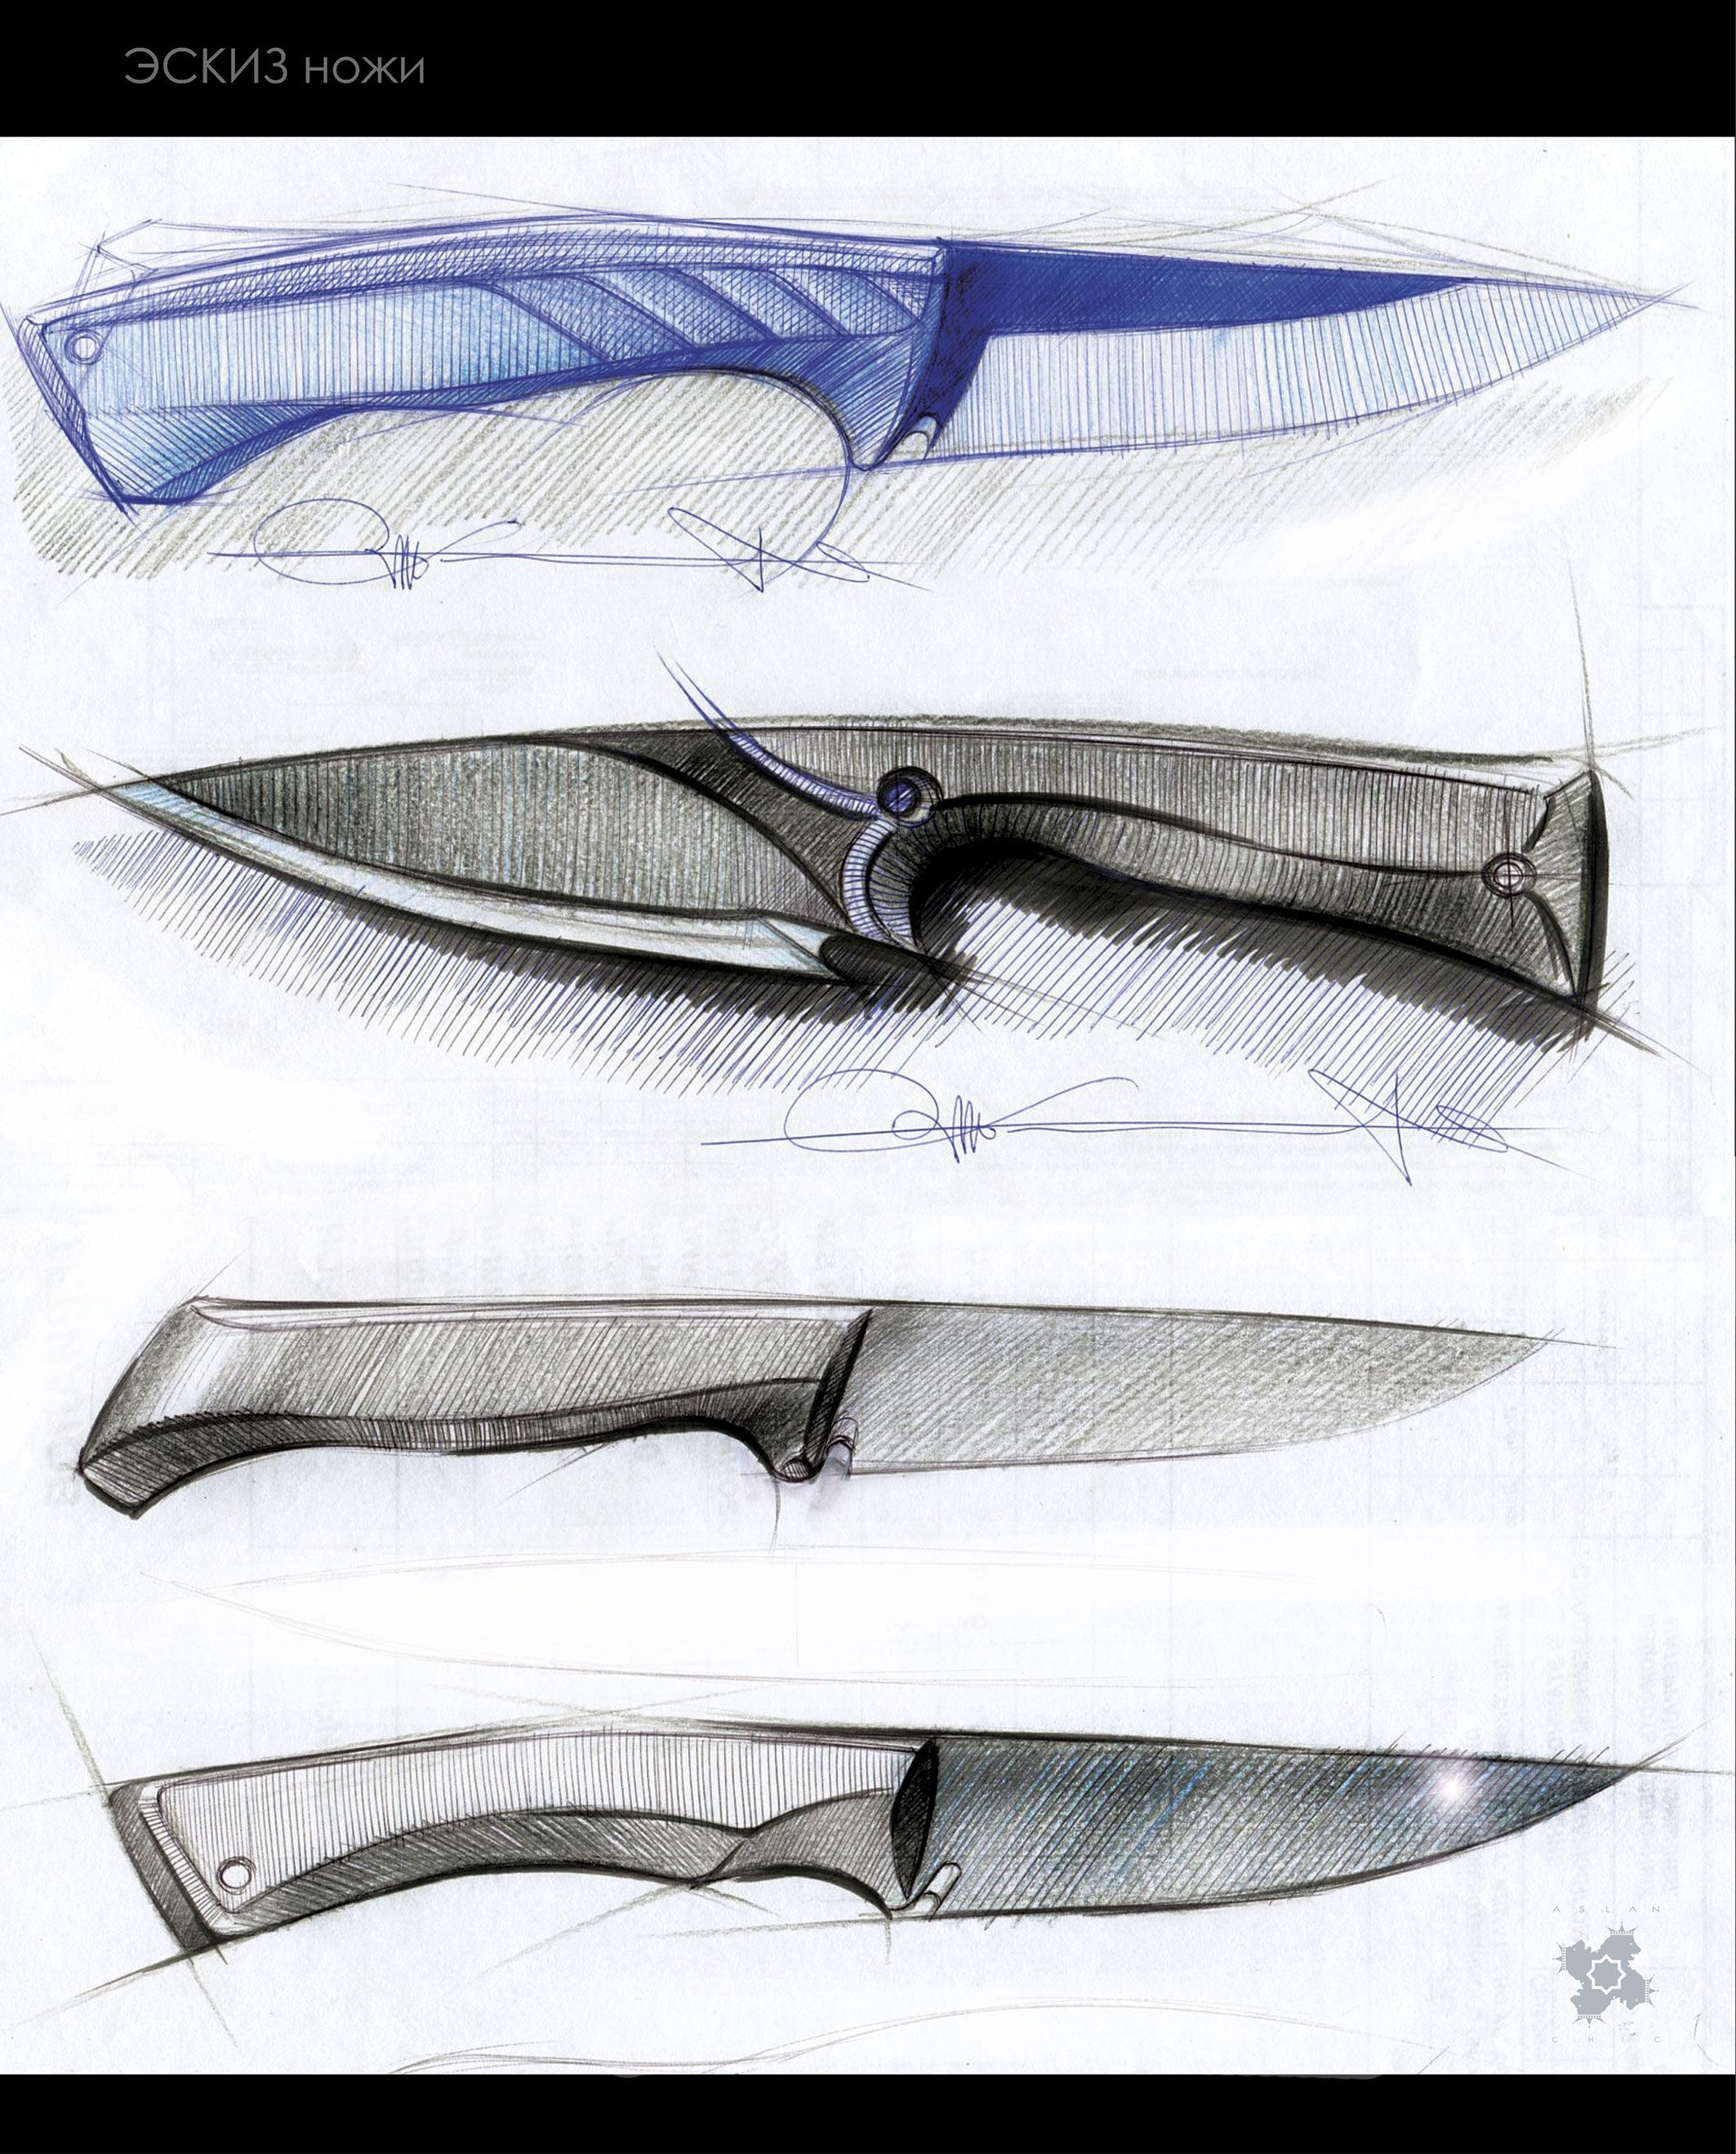 Нож из напильника - пошаговое изготовление своими руками в домашних условиях